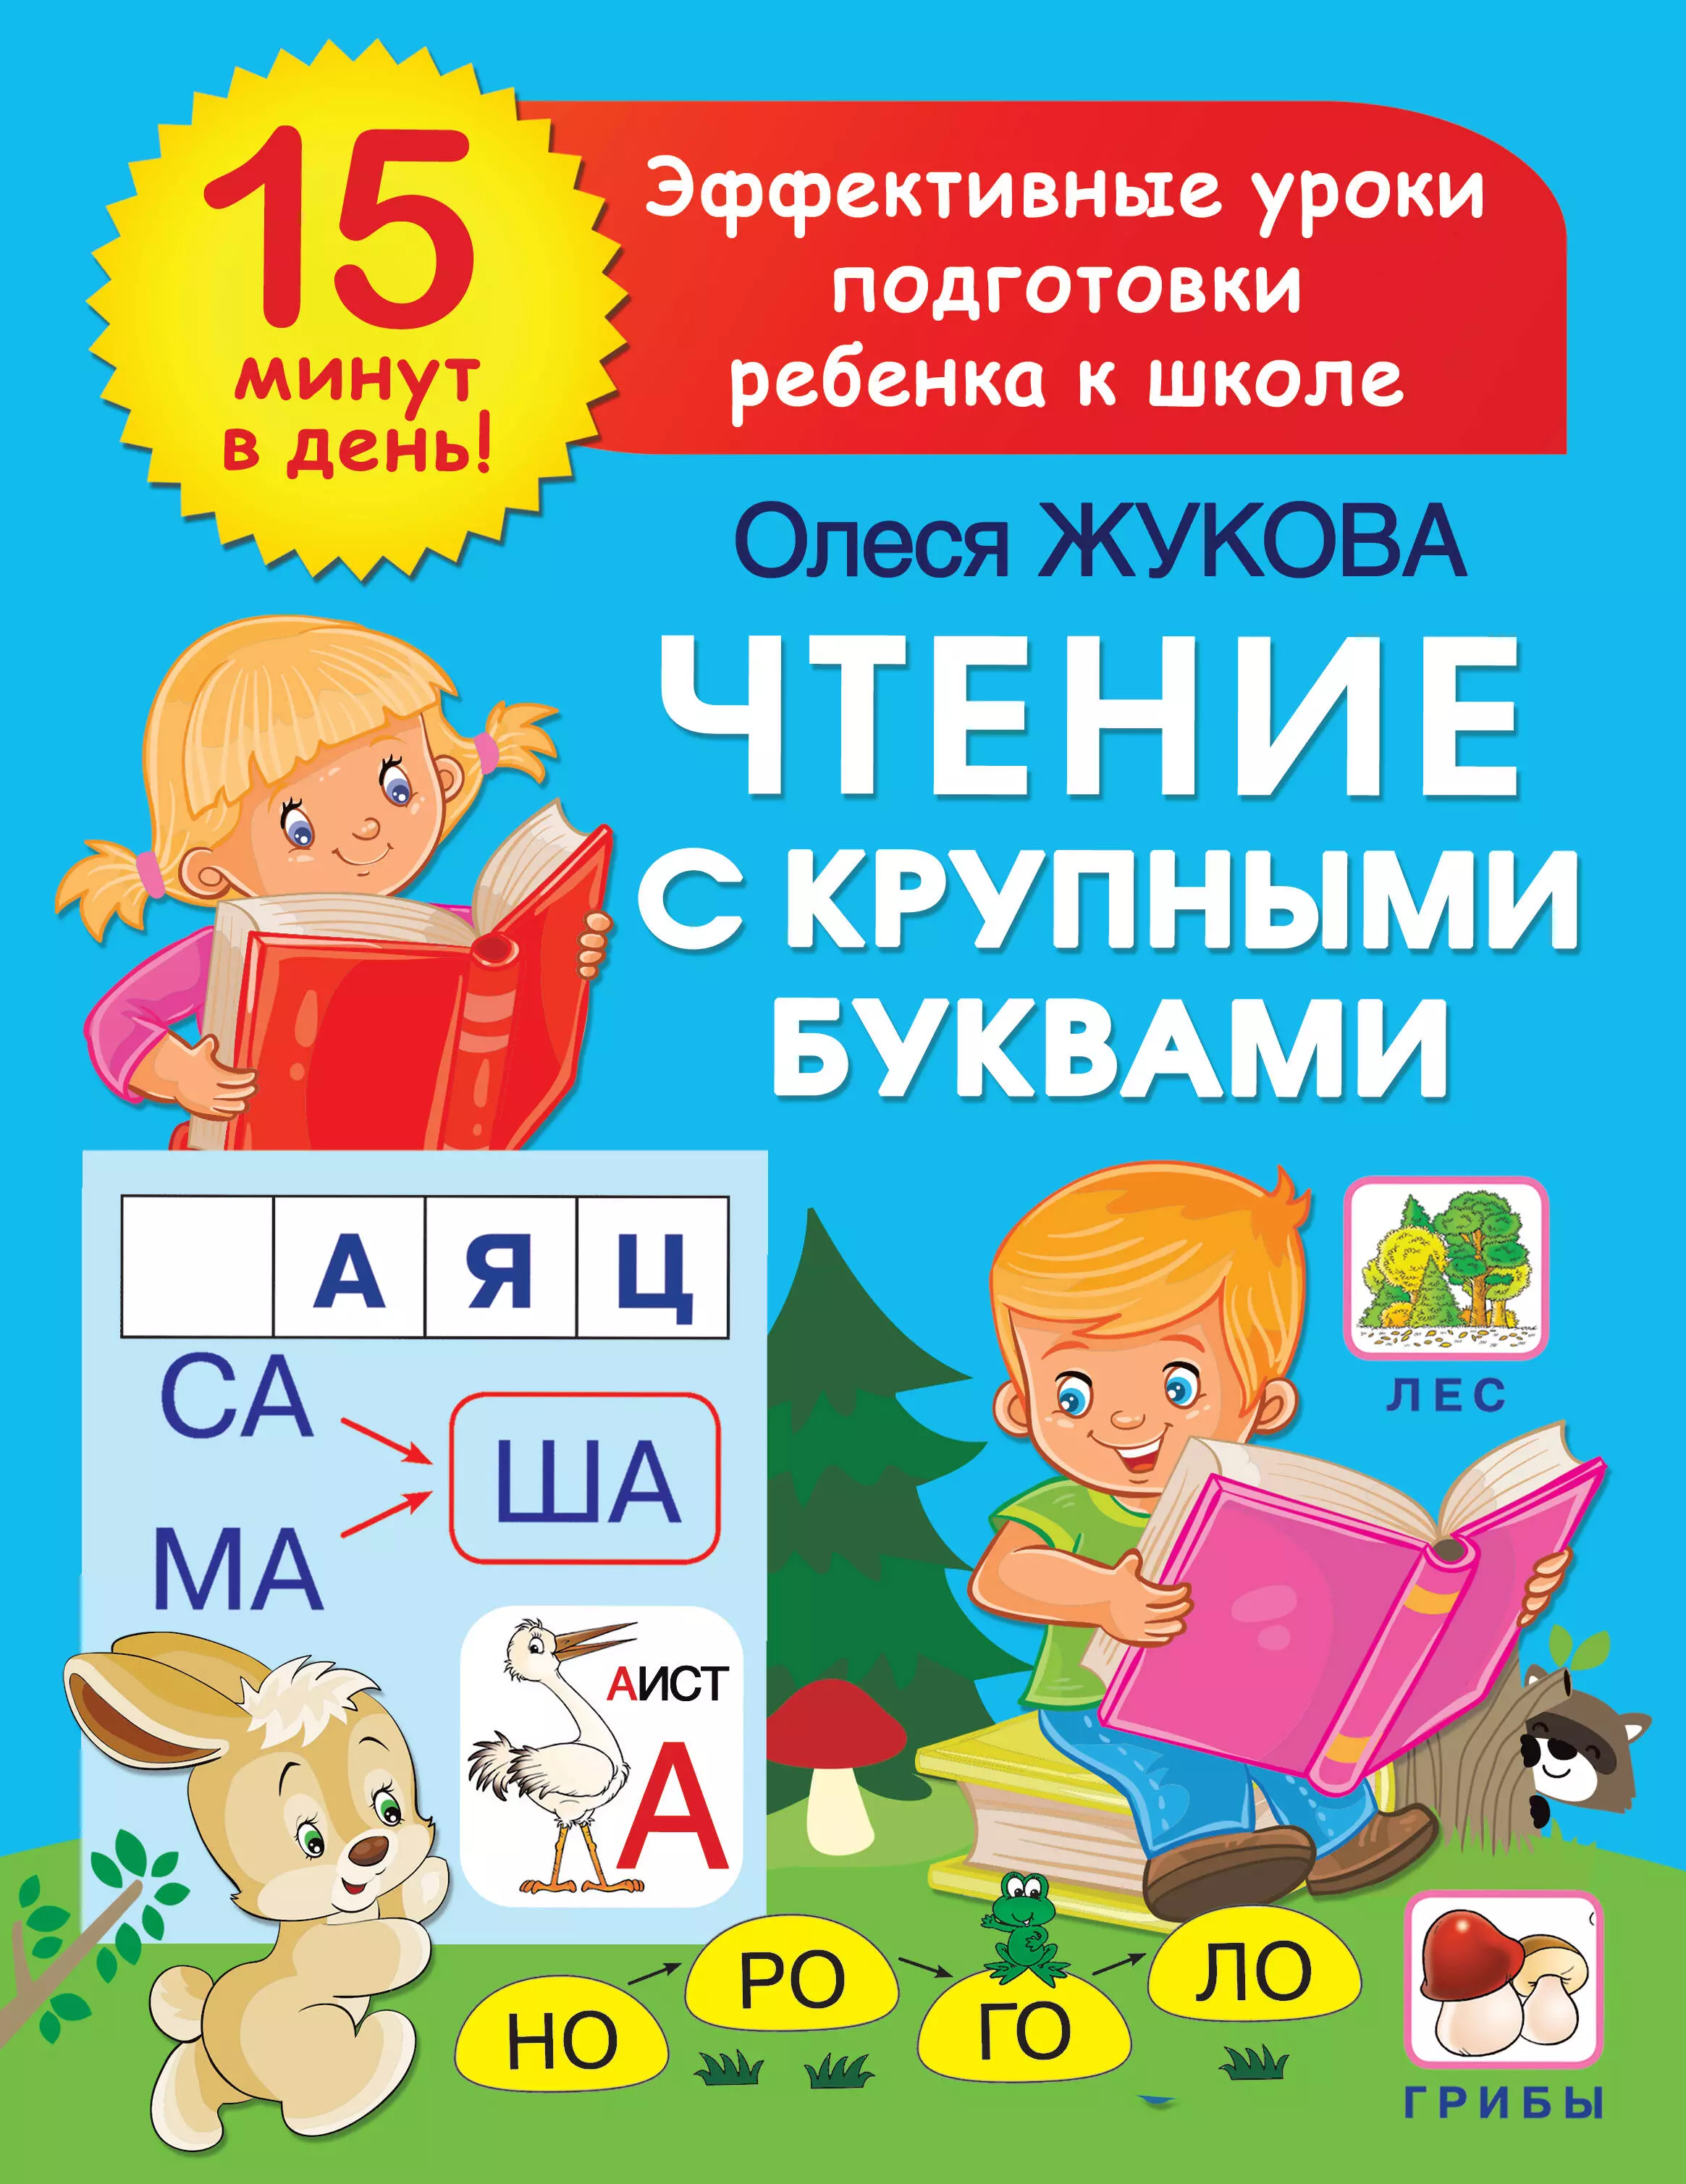 Жукова Олеся Станиславовна Чтение с крупными буквами жукова олеся станиславовна азбука для малышей с крупными буквами